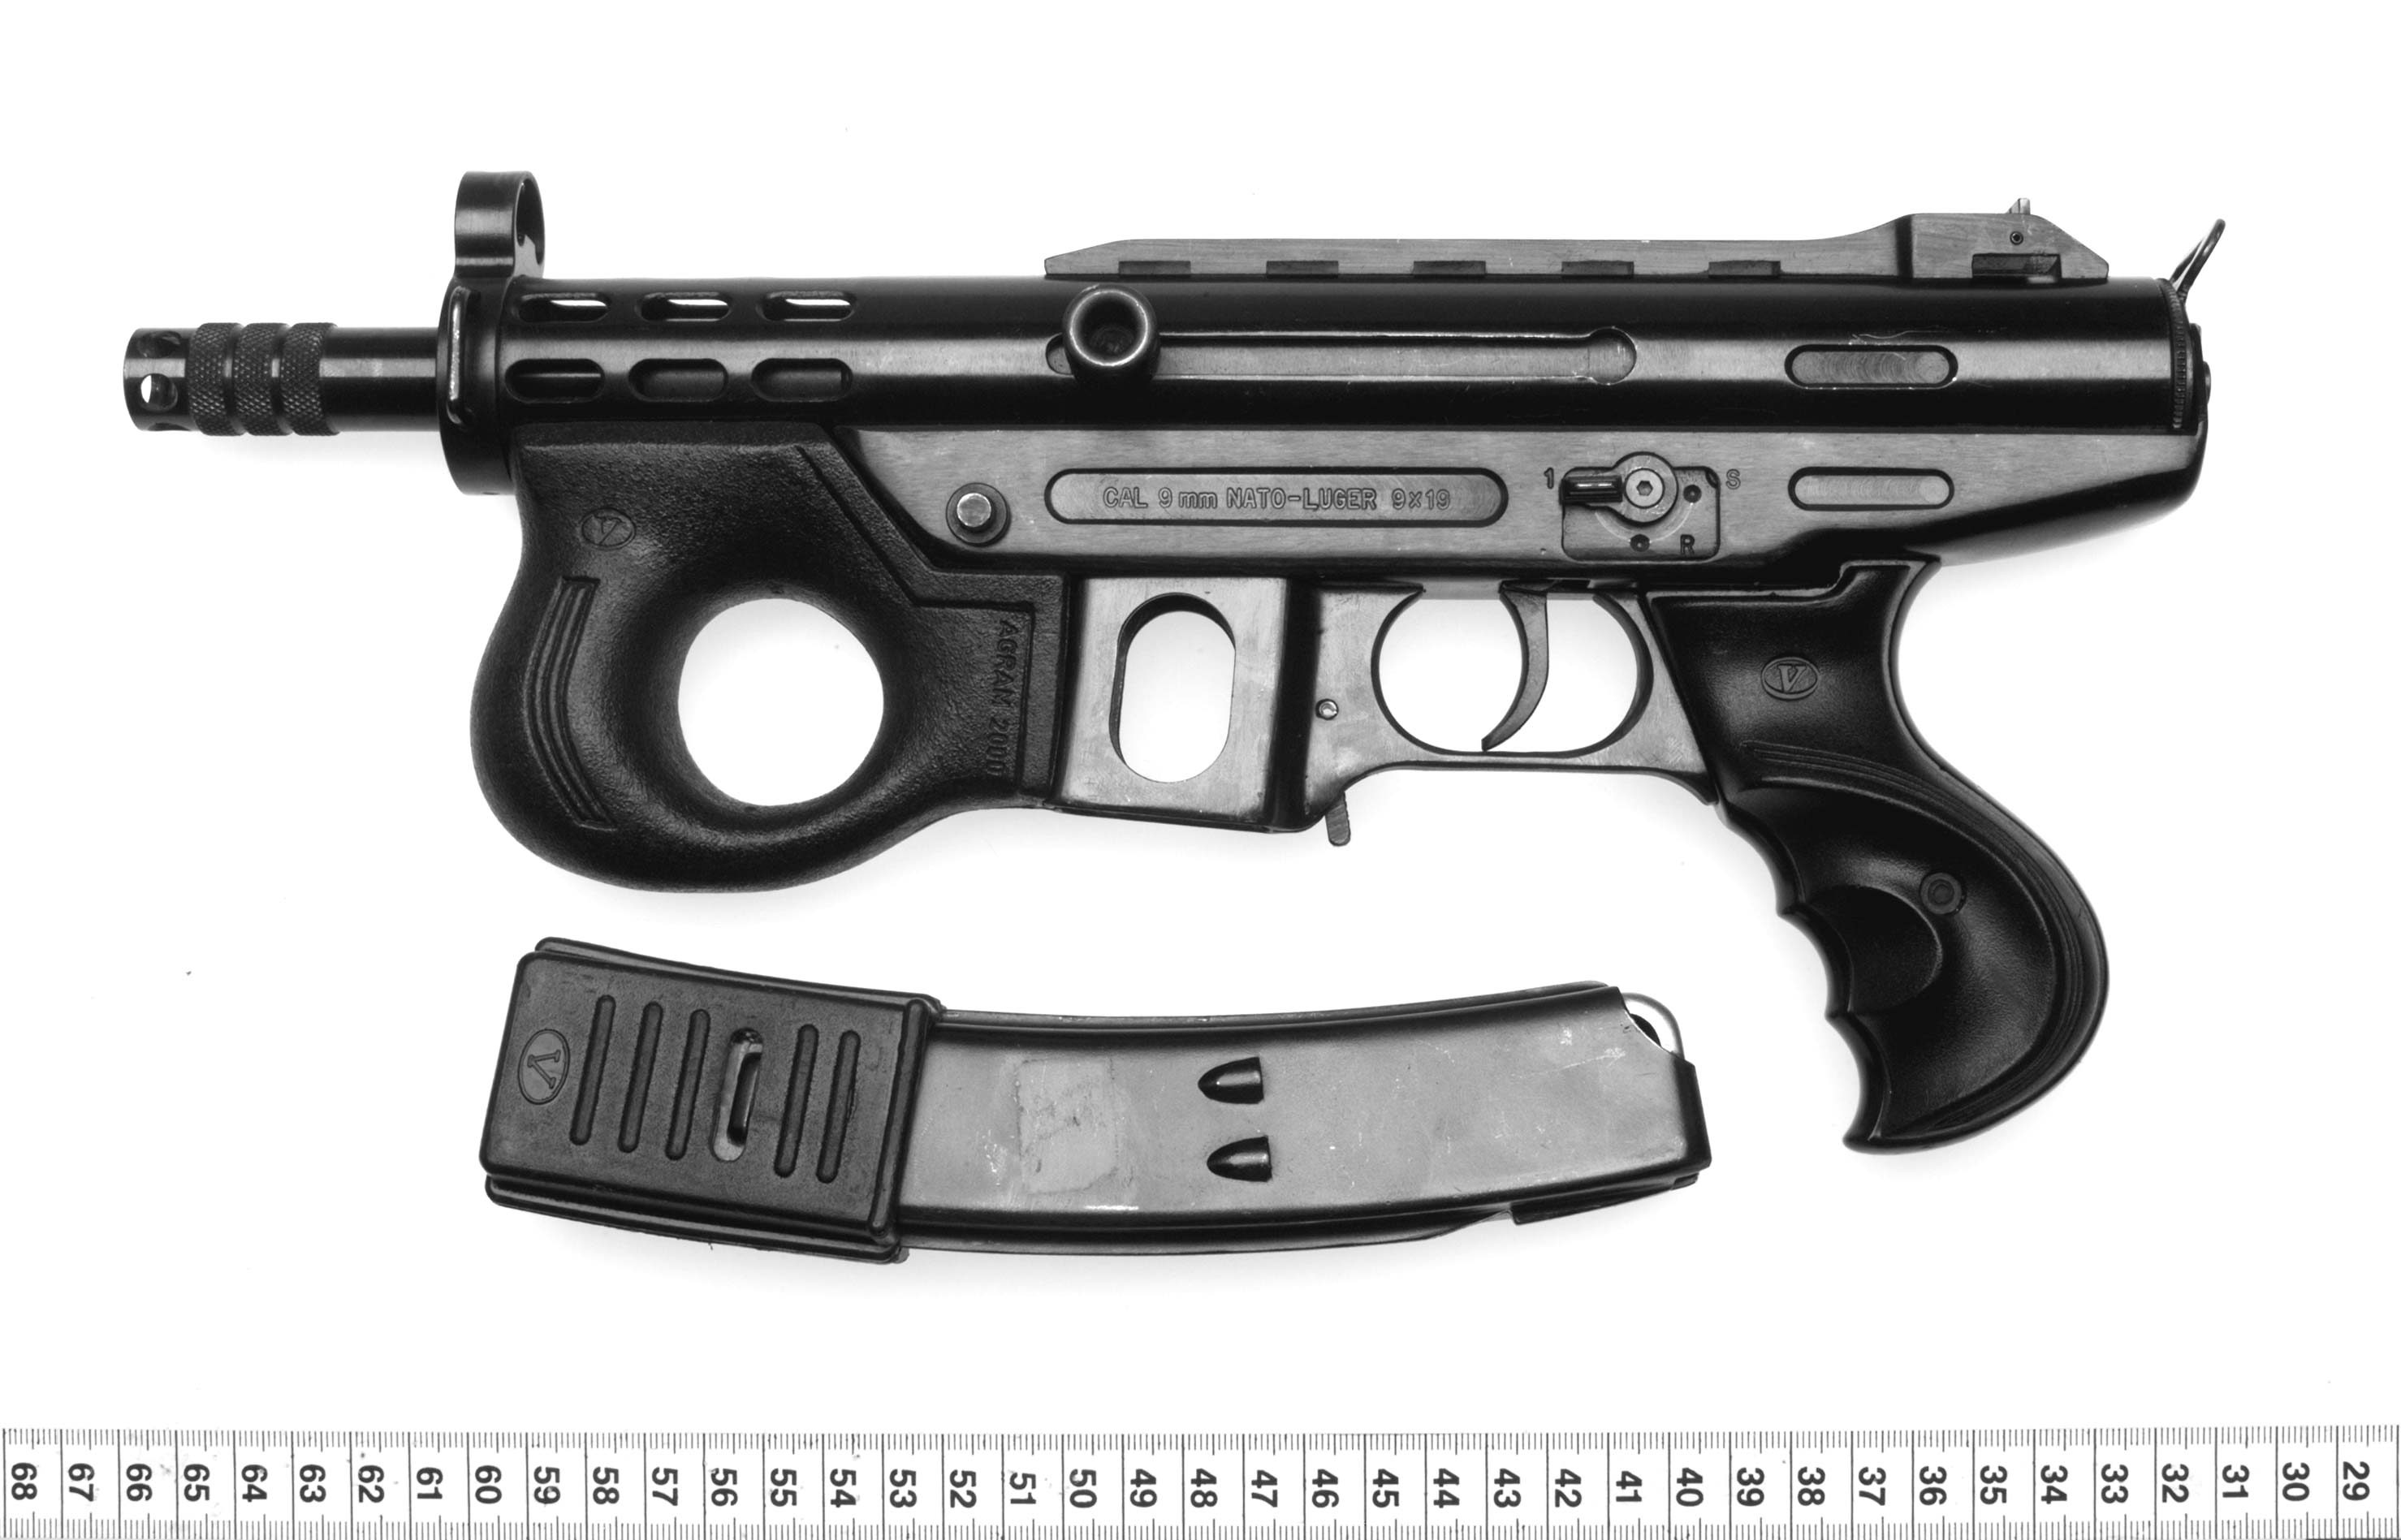 Die Maschinenpistole (Foto 1 ohne Schalldämpfer, Foto 2 mit Schalldämpfer) wurde in der Vergangenheit meist in einer Transporttasche verkauft, die in der Szene wegen ihrer auffälligen Form auch "Schweinchen" genannt wird. (Fotos: Polizei)